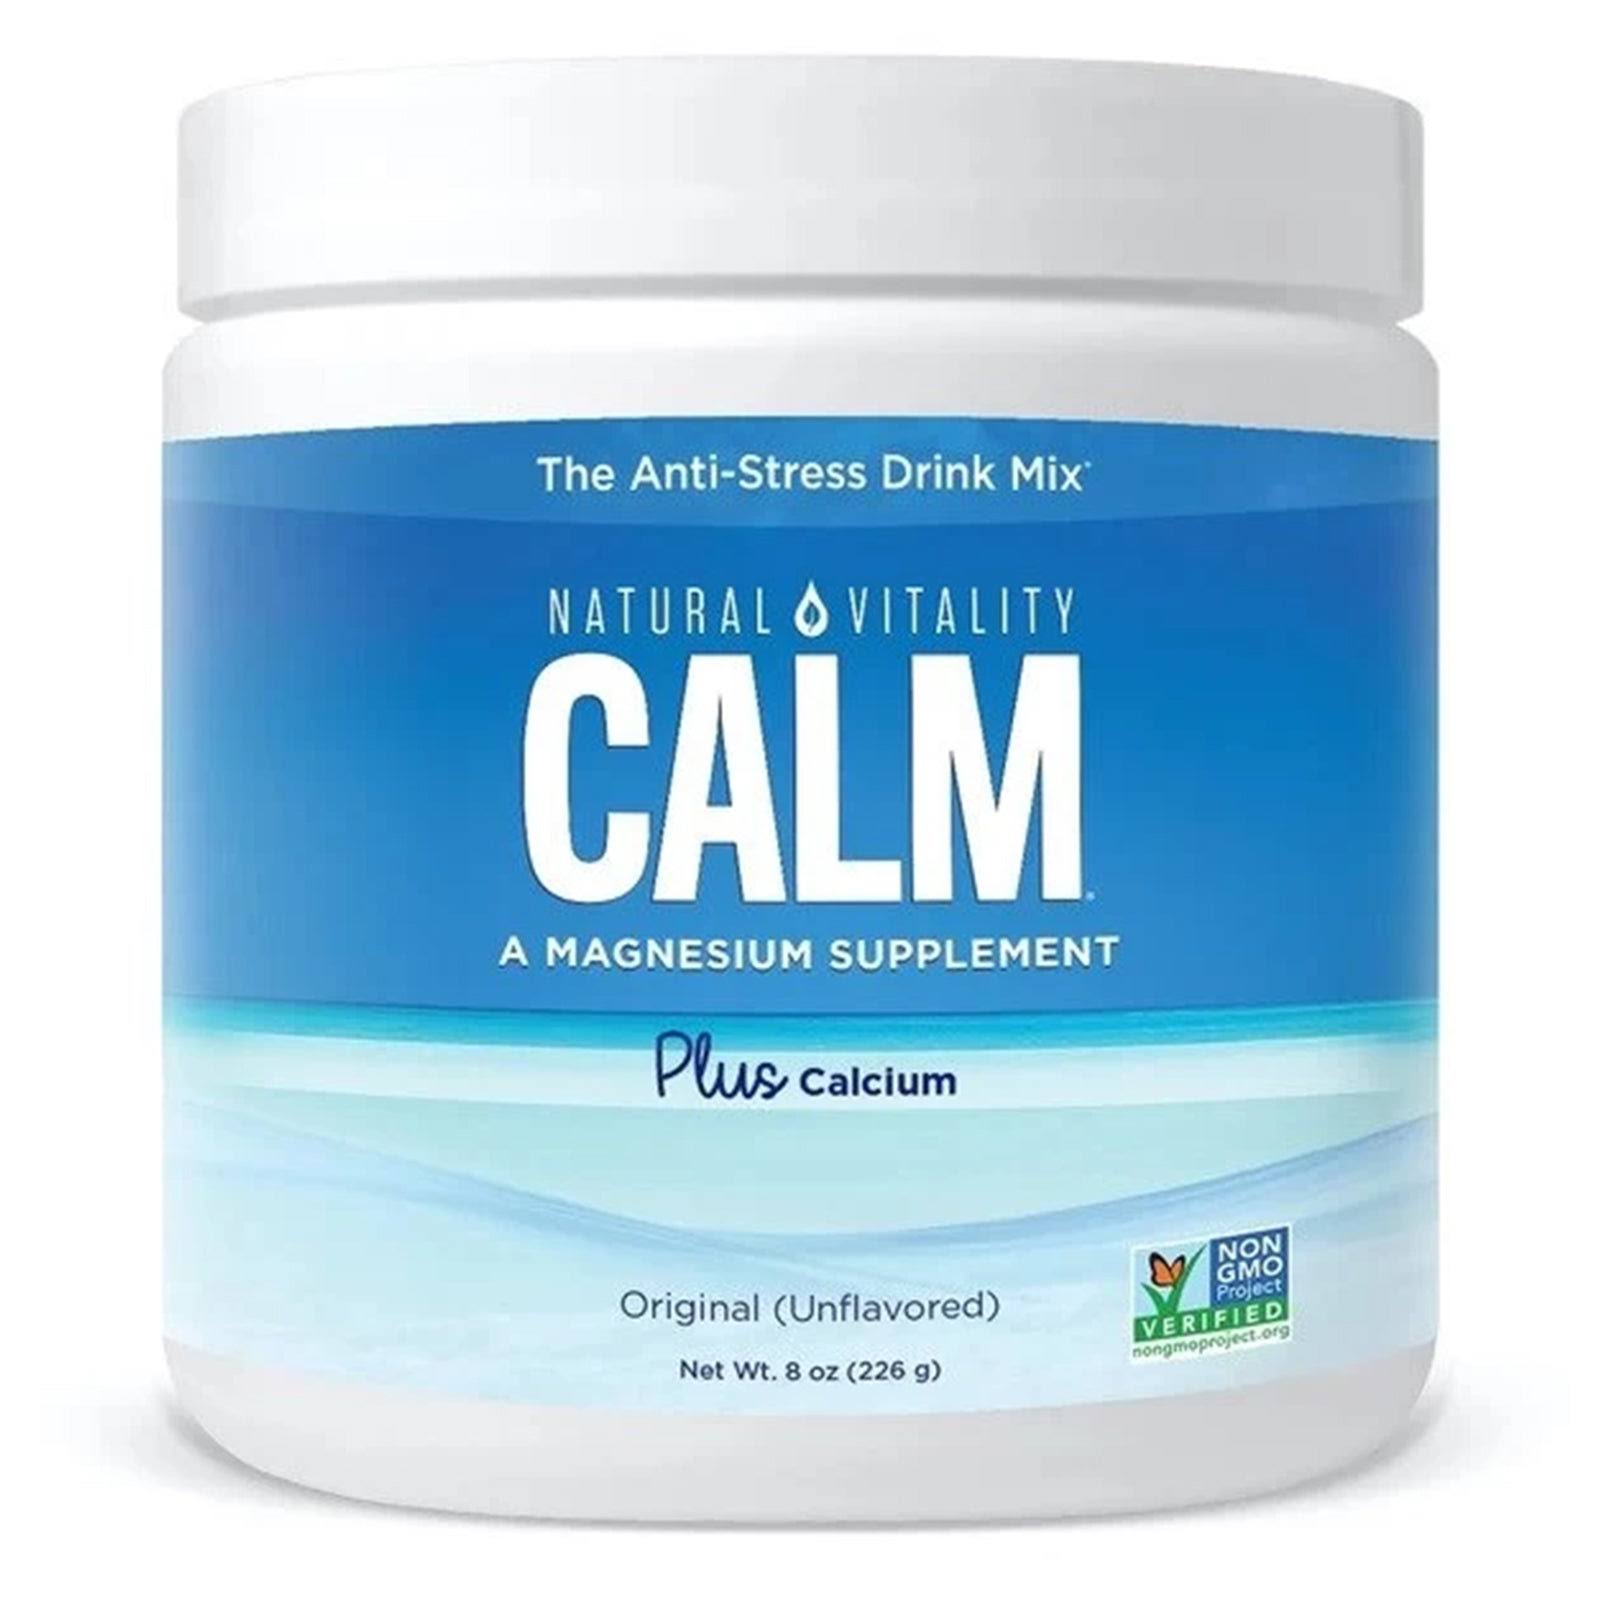 Natural Vitality Calm Magnesium Plus Calcium Unflavored 8 oz